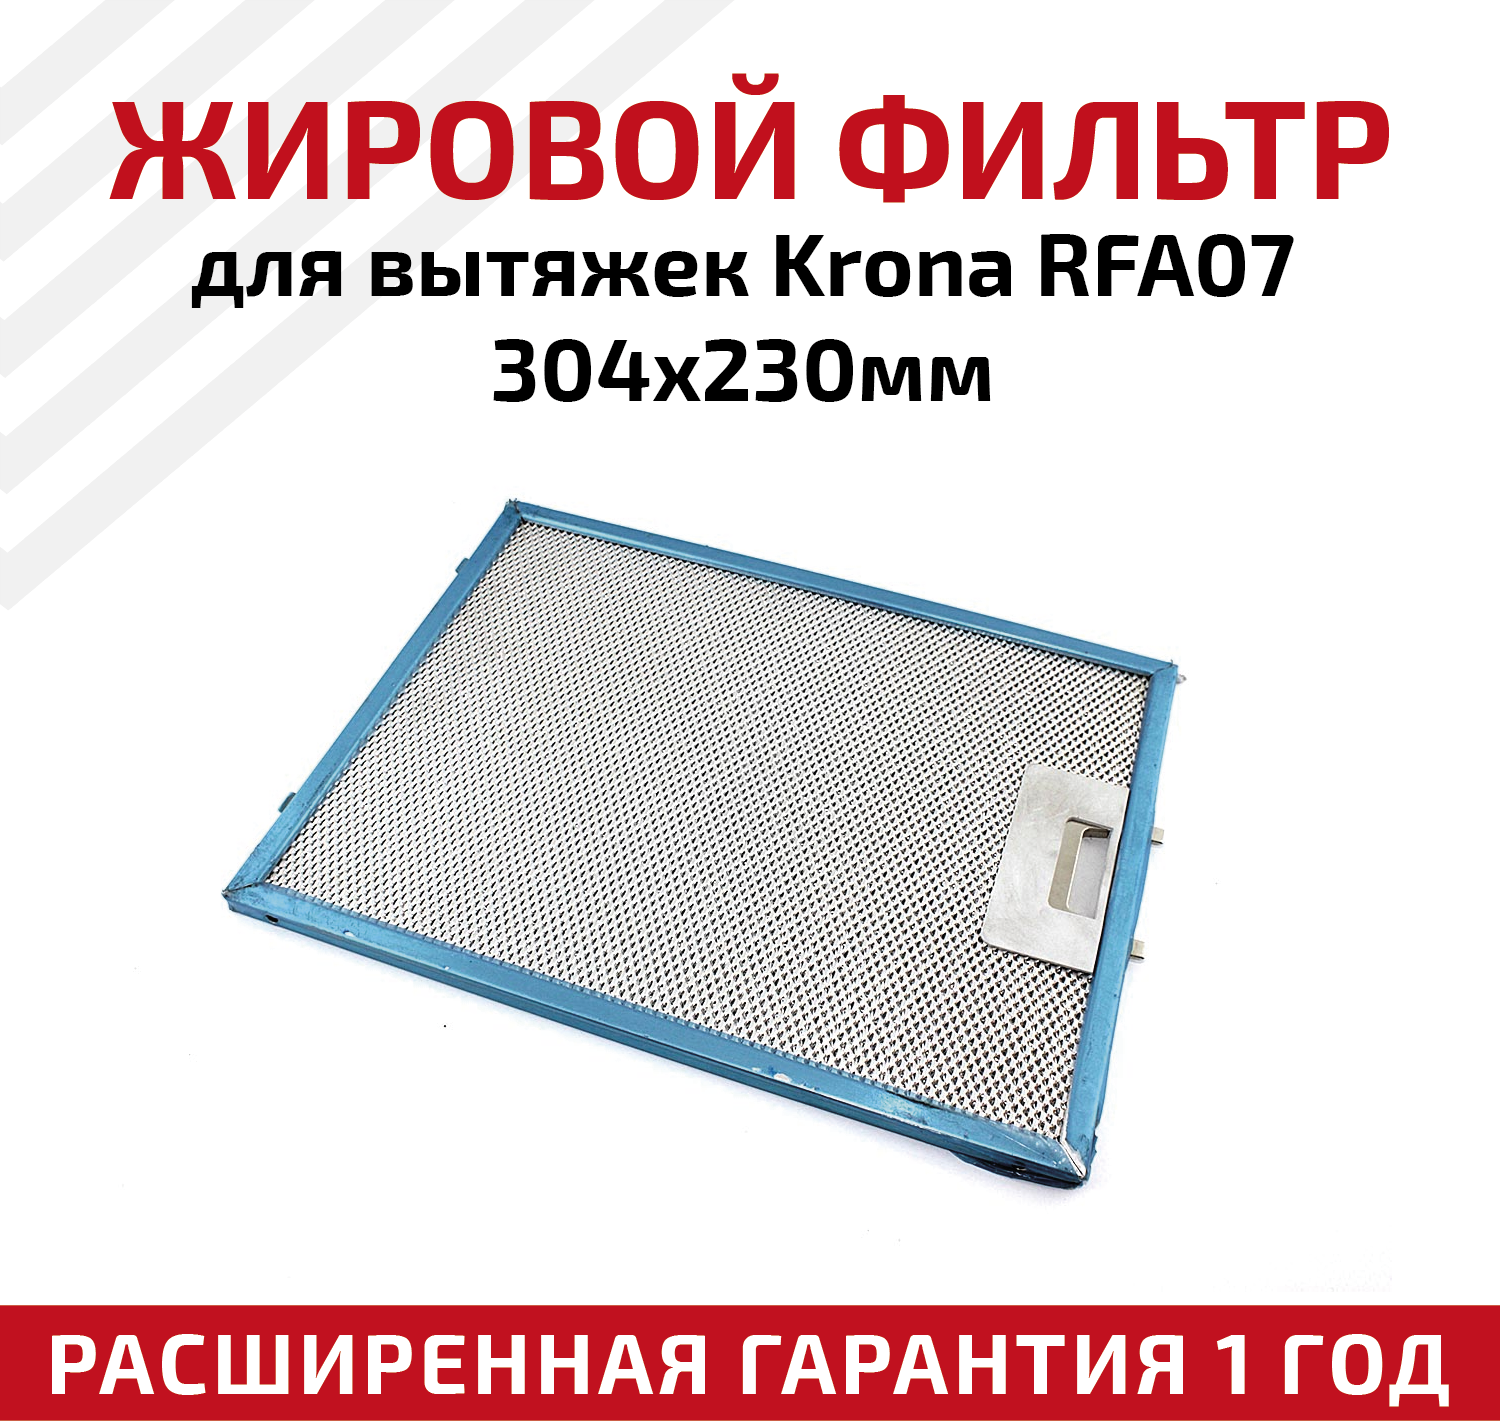 Жировой фильтр (кассета) алюминиевый (металлический) рамочный для кухонных вытяжек Krona RFA07, многоразовый, 304х230мм